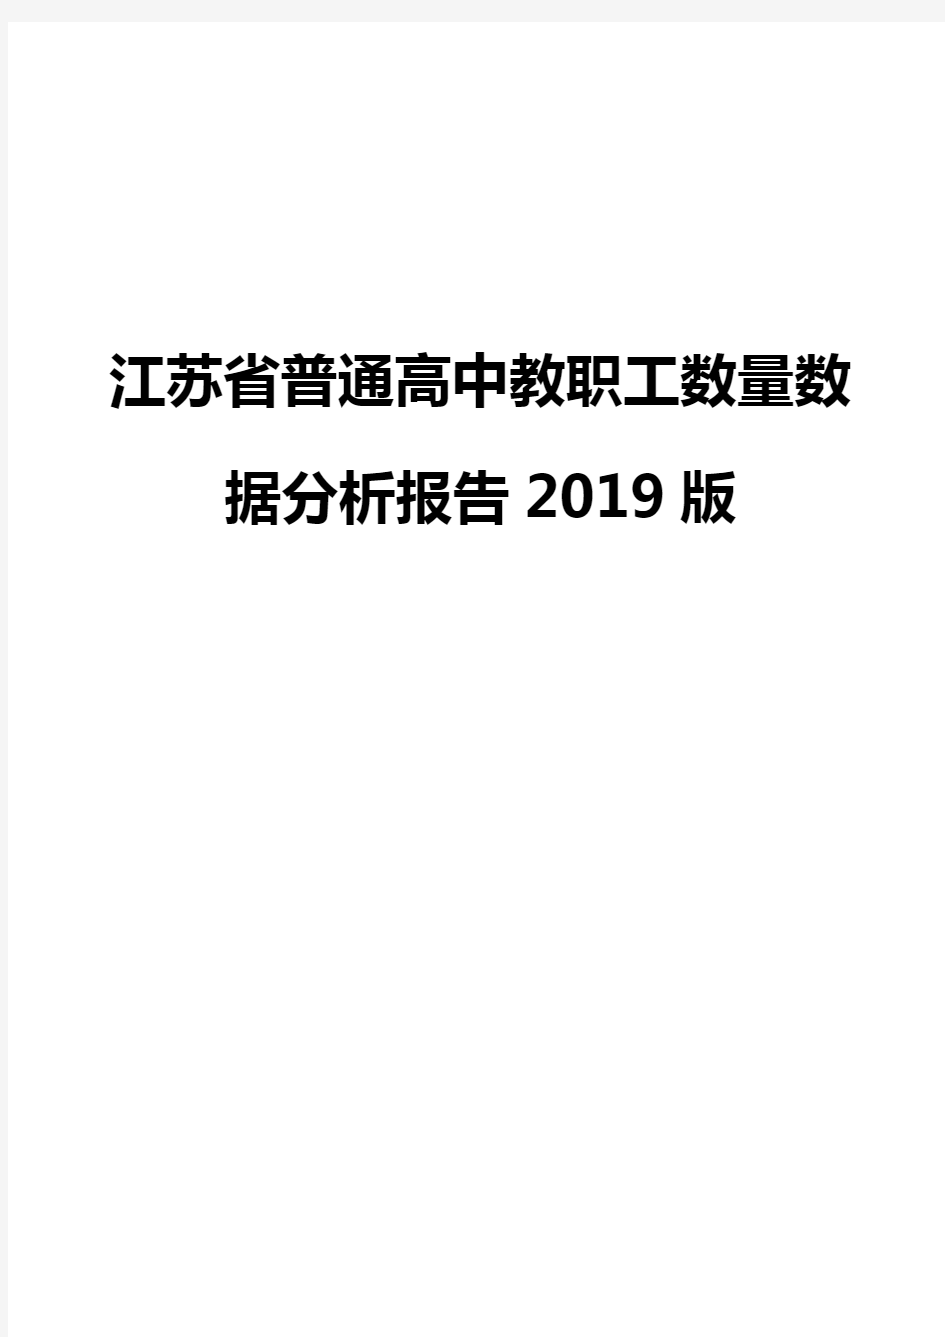 江苏省普通高中教职工数量数据分析报告2019版